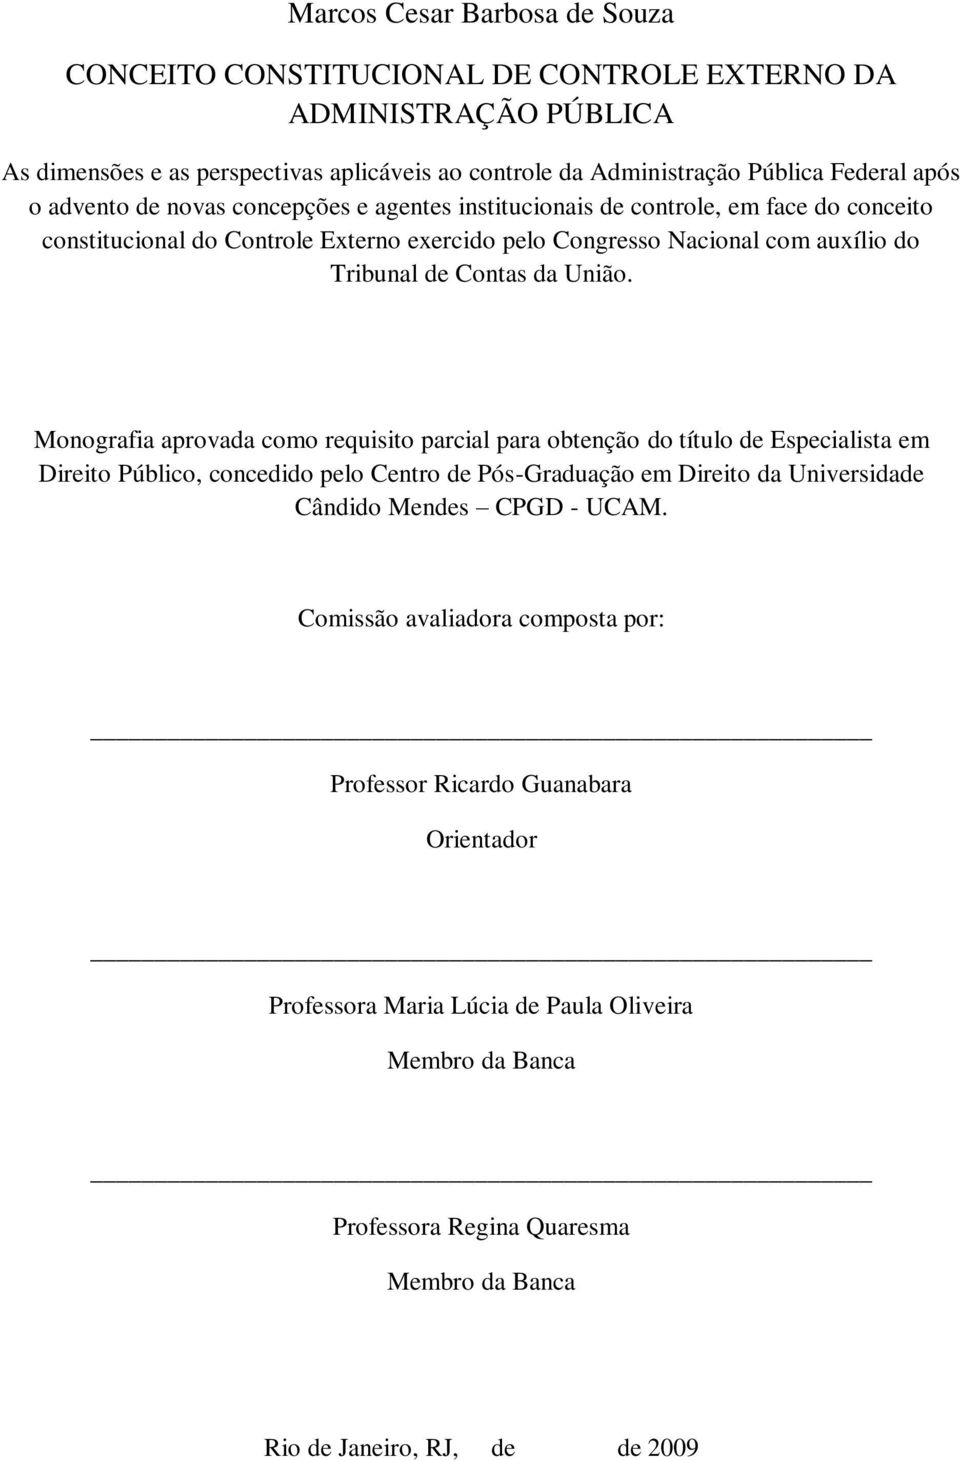 Monografia aprovada como requisito parcial para obtenção do título de Especialista em Direito Público, concedido pelo Centro de Pós-Graduação em Direito da Universidade Cândido Mendes CPGD - UCAM.